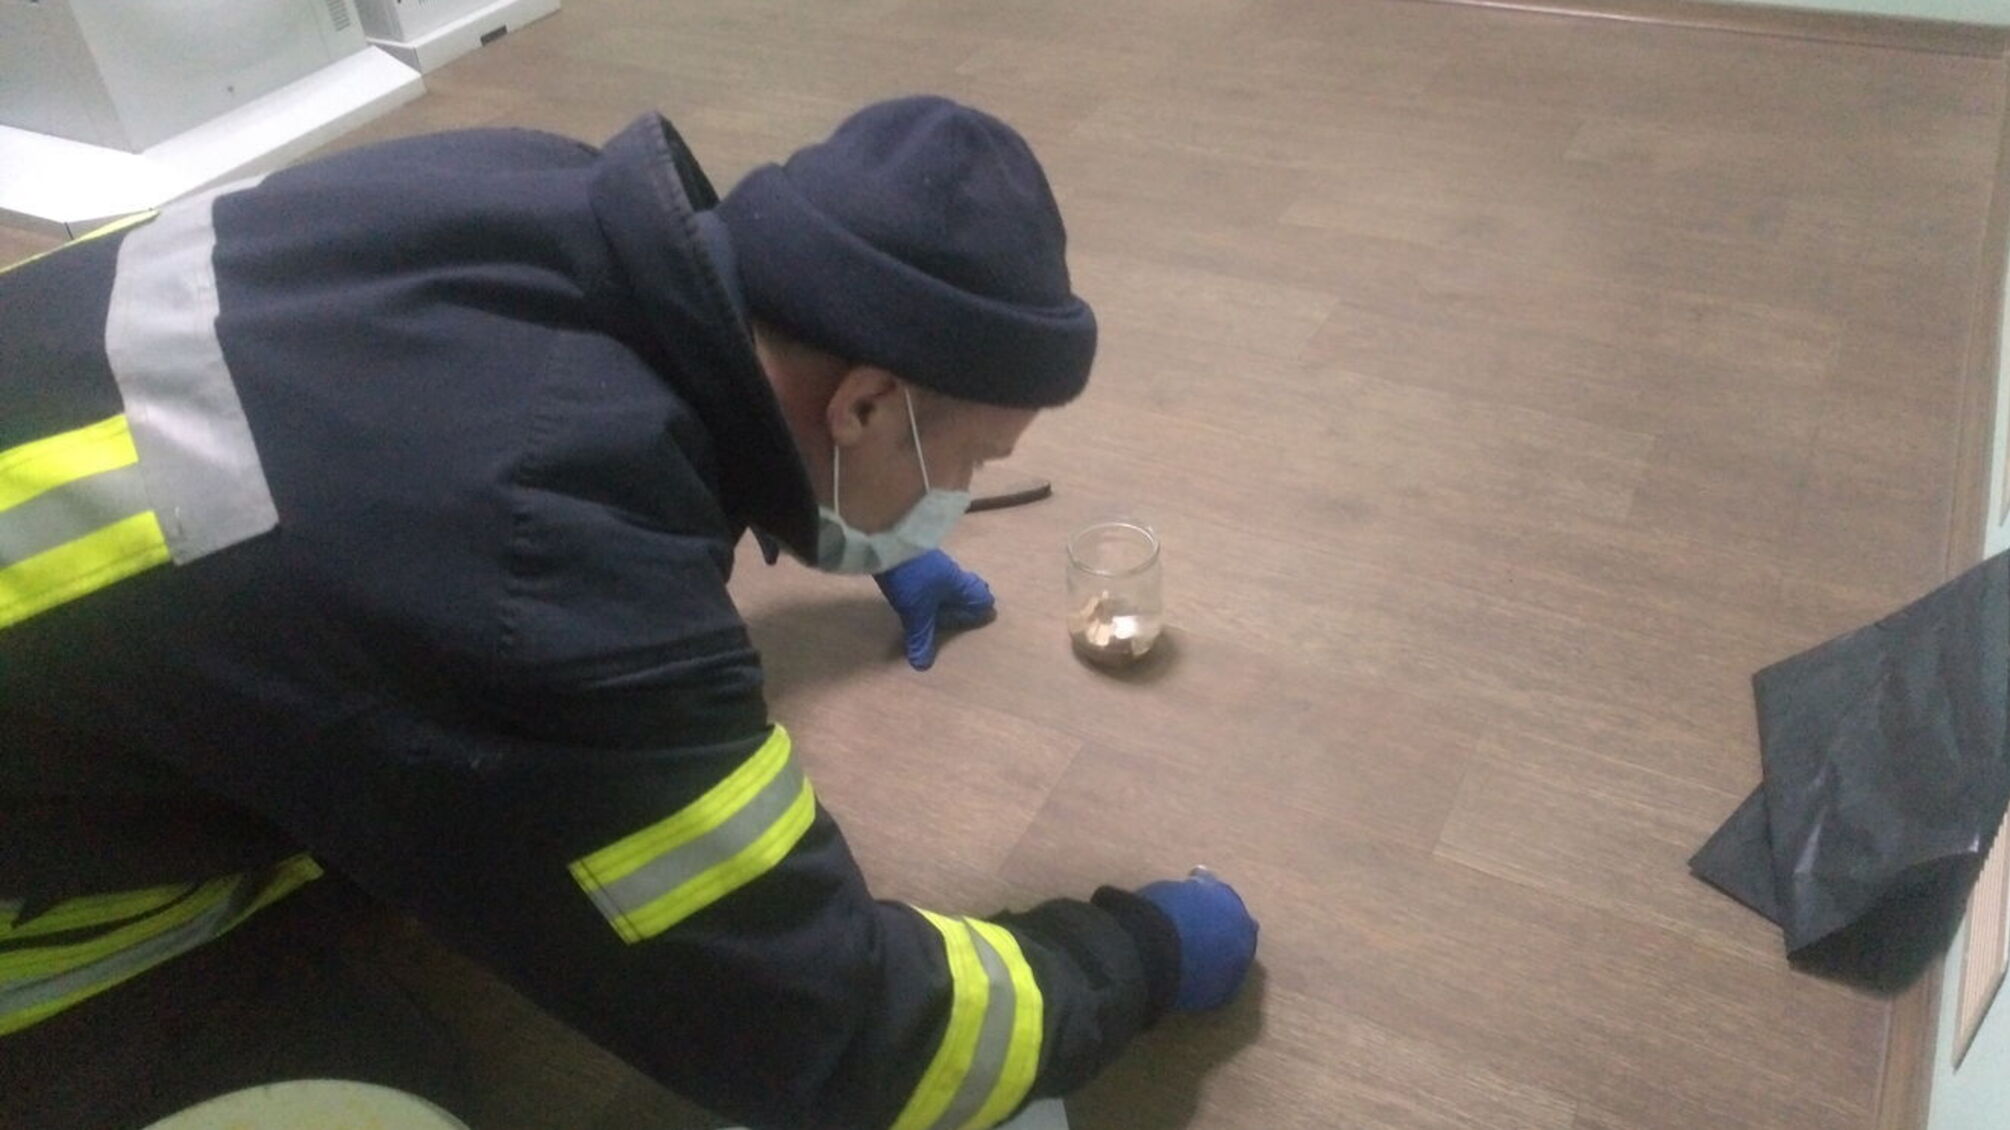 Донеччина: у лікарні рятувальники зібрали ртуть з розбитого термометра